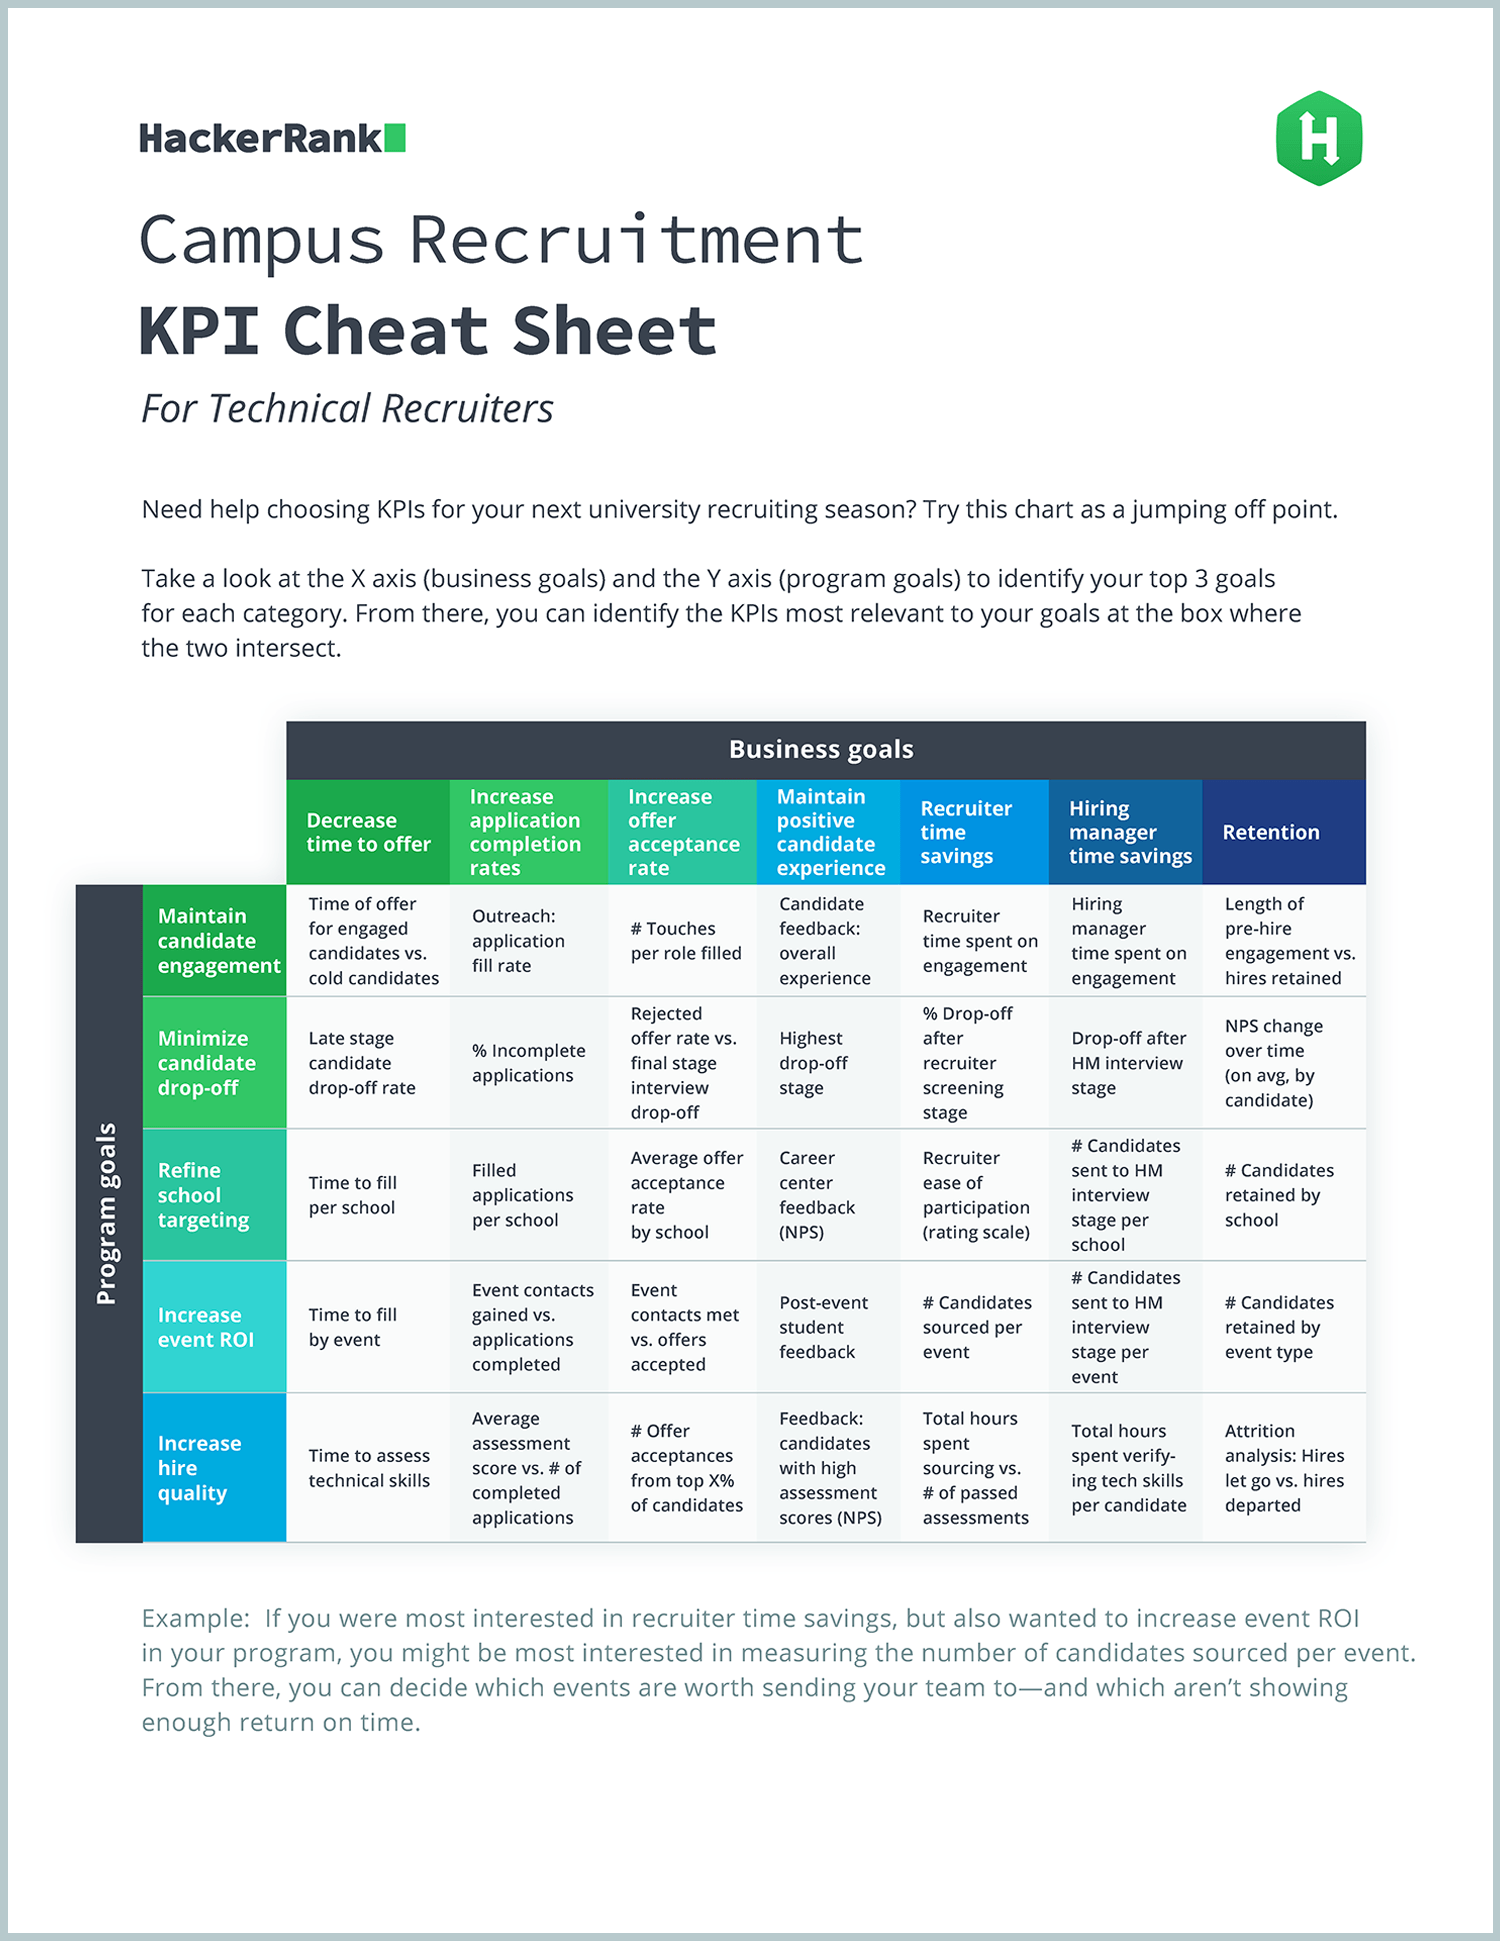 HackerRank_Campus-Recruitment-KPI-Cheat-Sheet